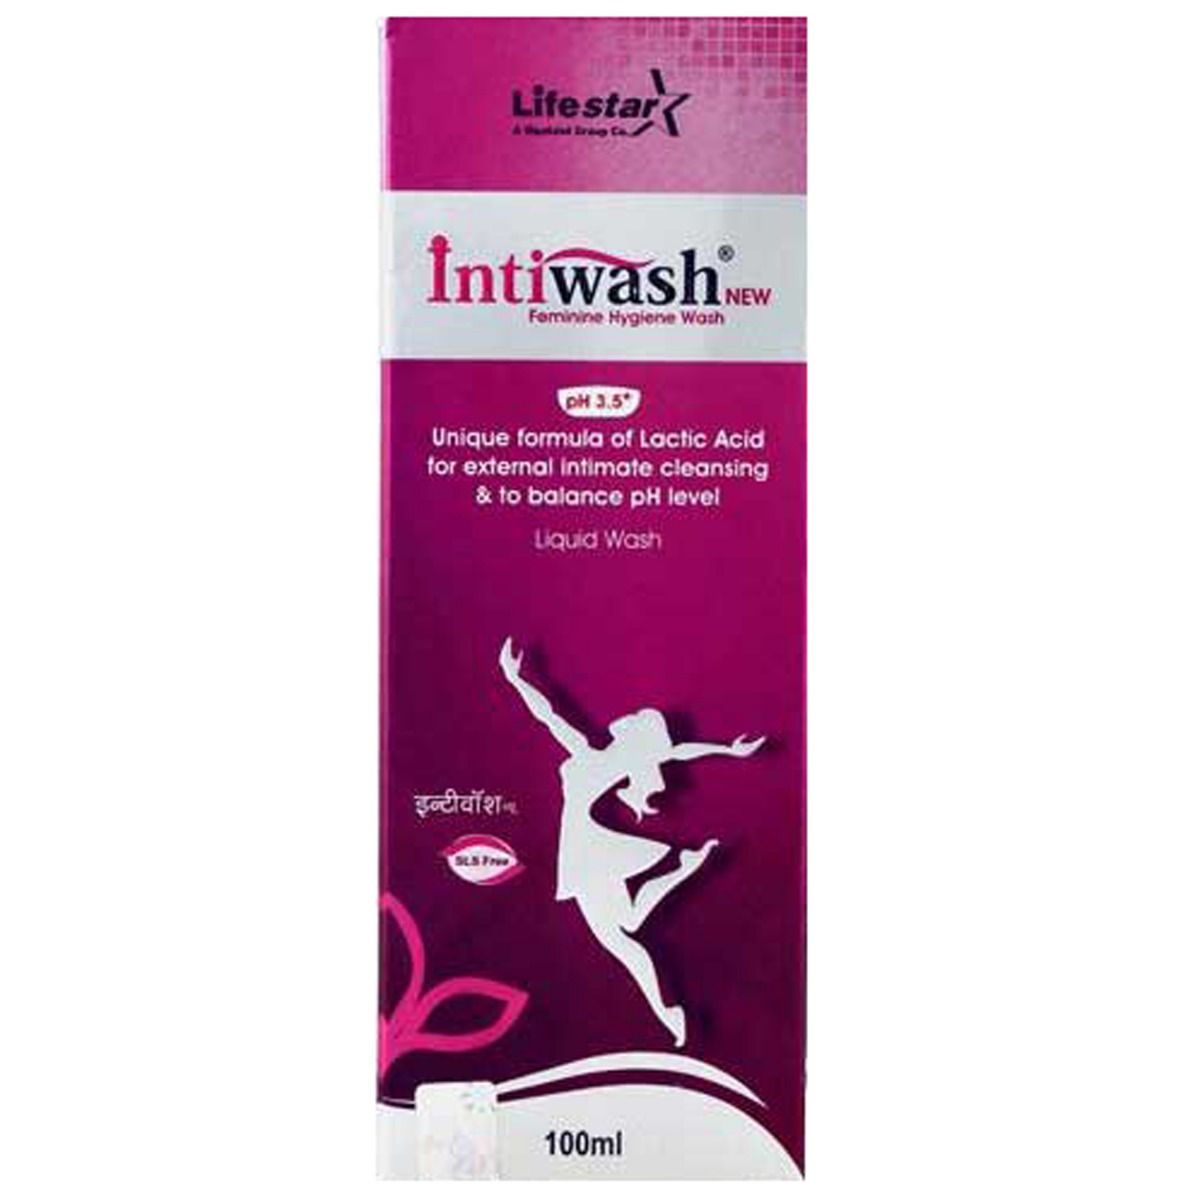 Intiwash Liquid Soap - 100ml, Pack of 1 